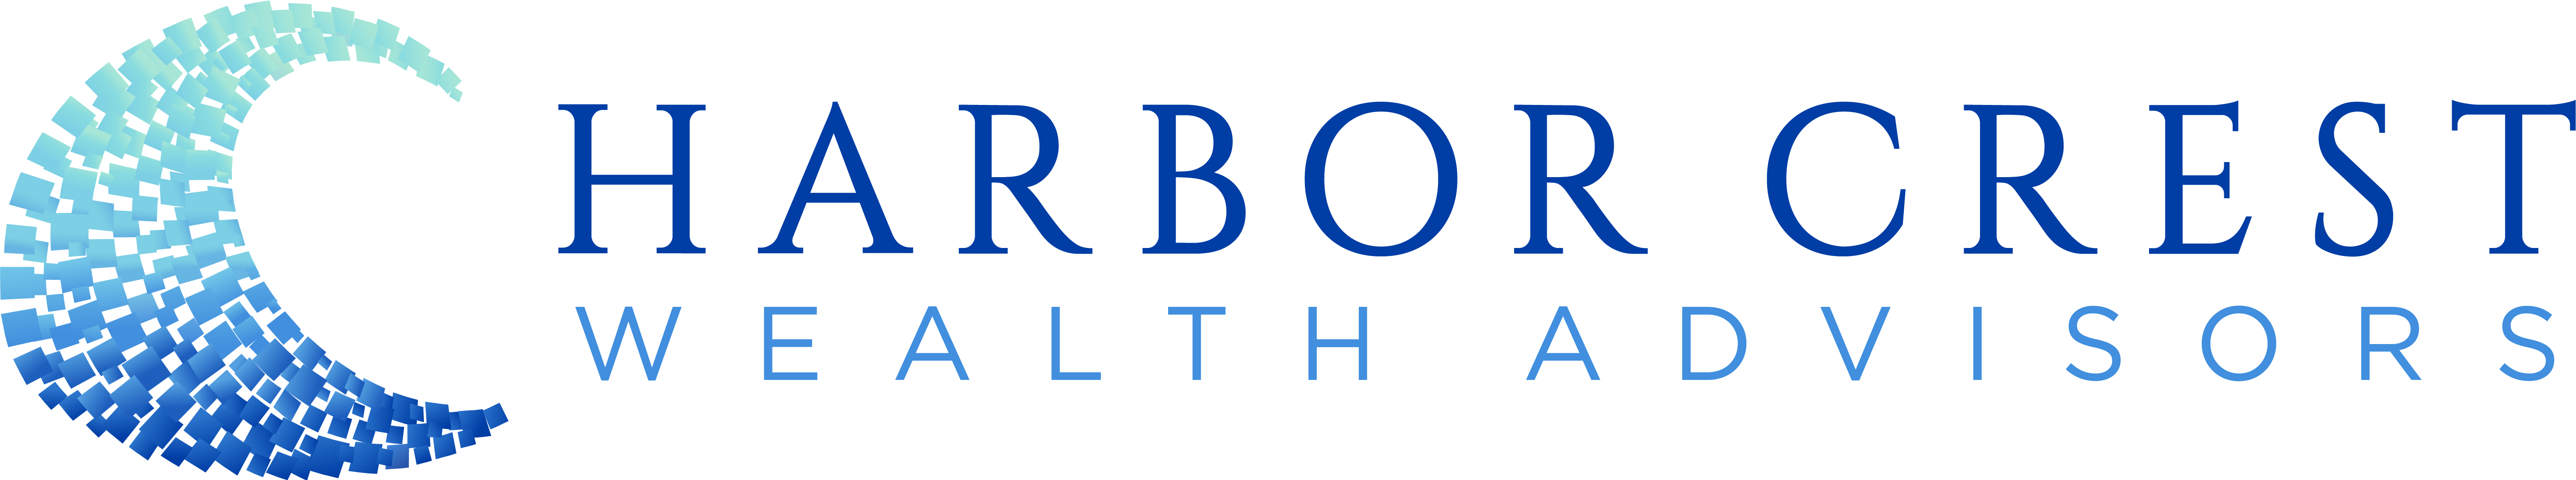 HARBOR CREST – WEALTH ADVISOR